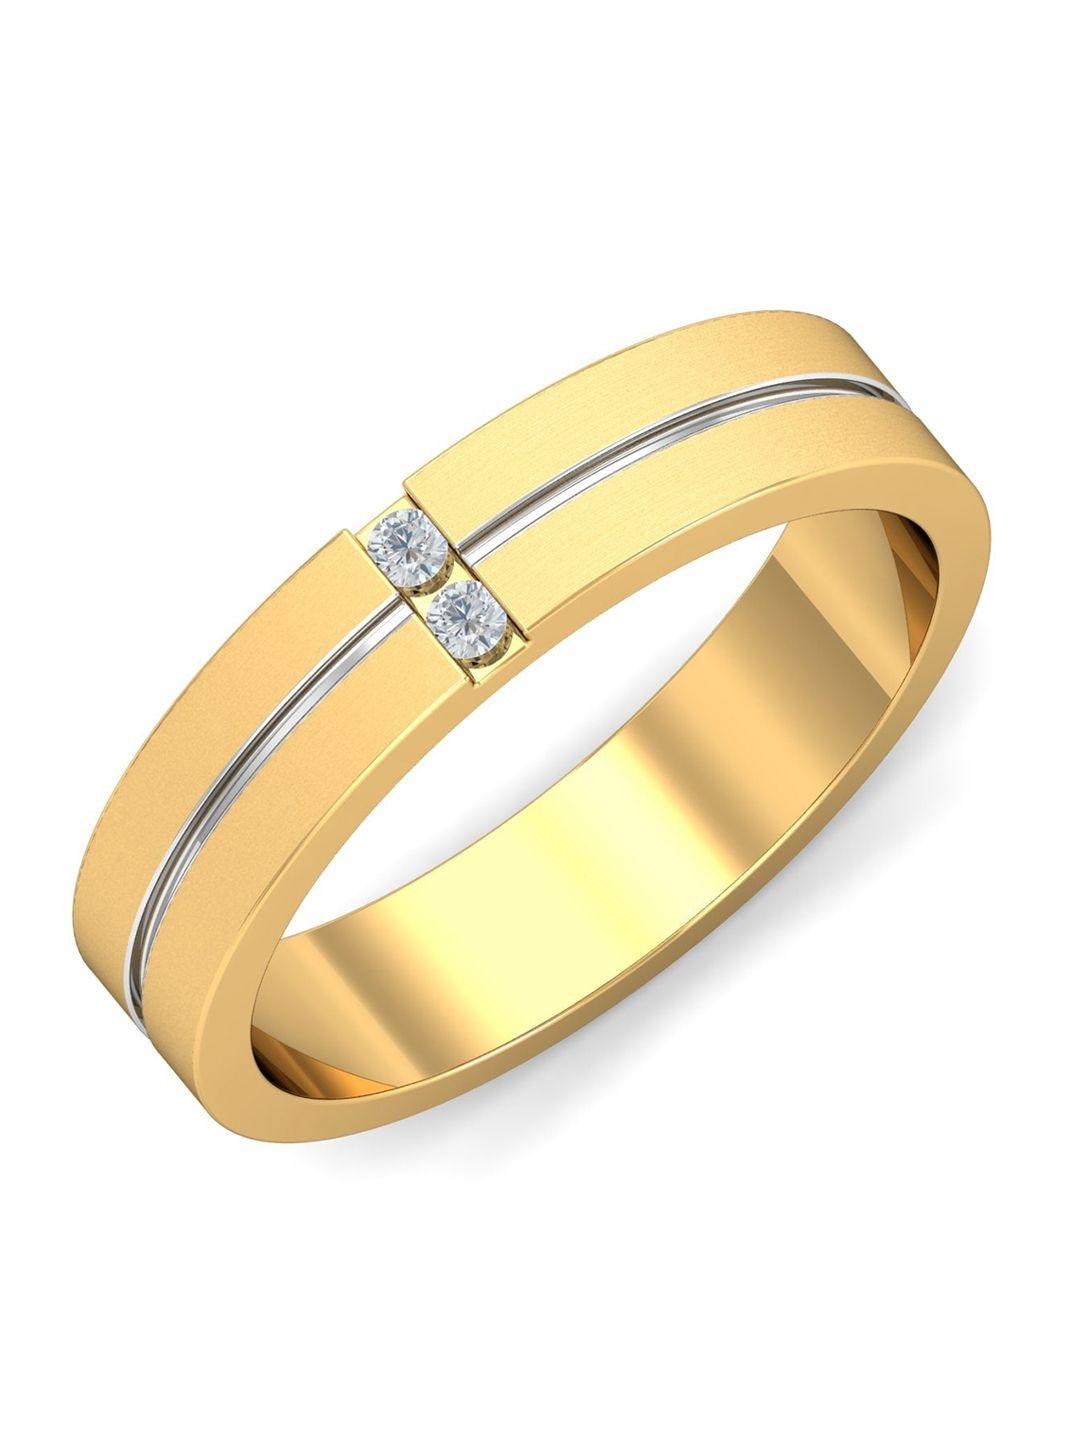 kuberbox men 18 kt gold diamond-studded finger ring - 7.13 gm